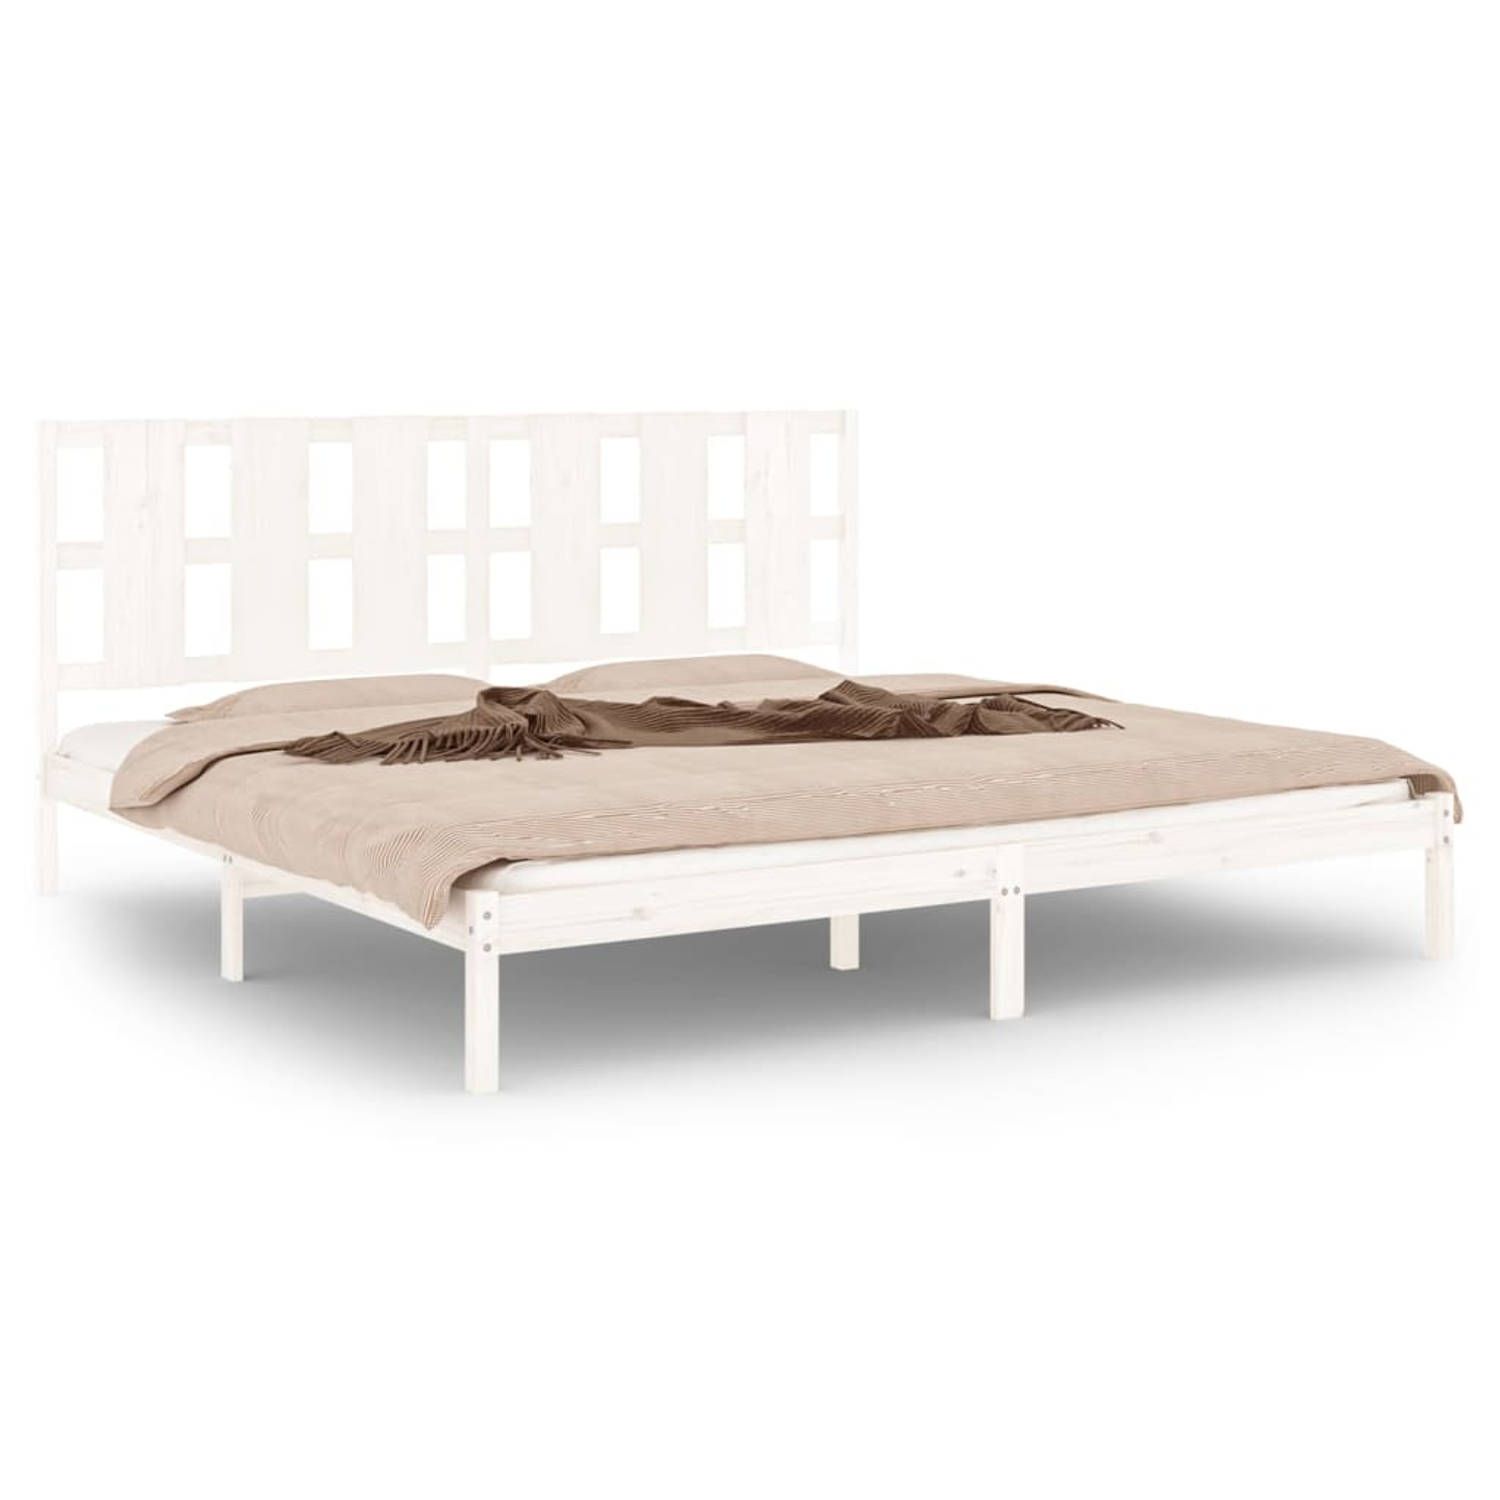 The Living Store Bedframe massief hout wit 180x200 cm 6FT Super King - Bedframe - Bedframes - Bed - Bedbodem - Ledikant - Bed Frame - Massief Houten Bedframe - Slaapmeubel - Tweepe